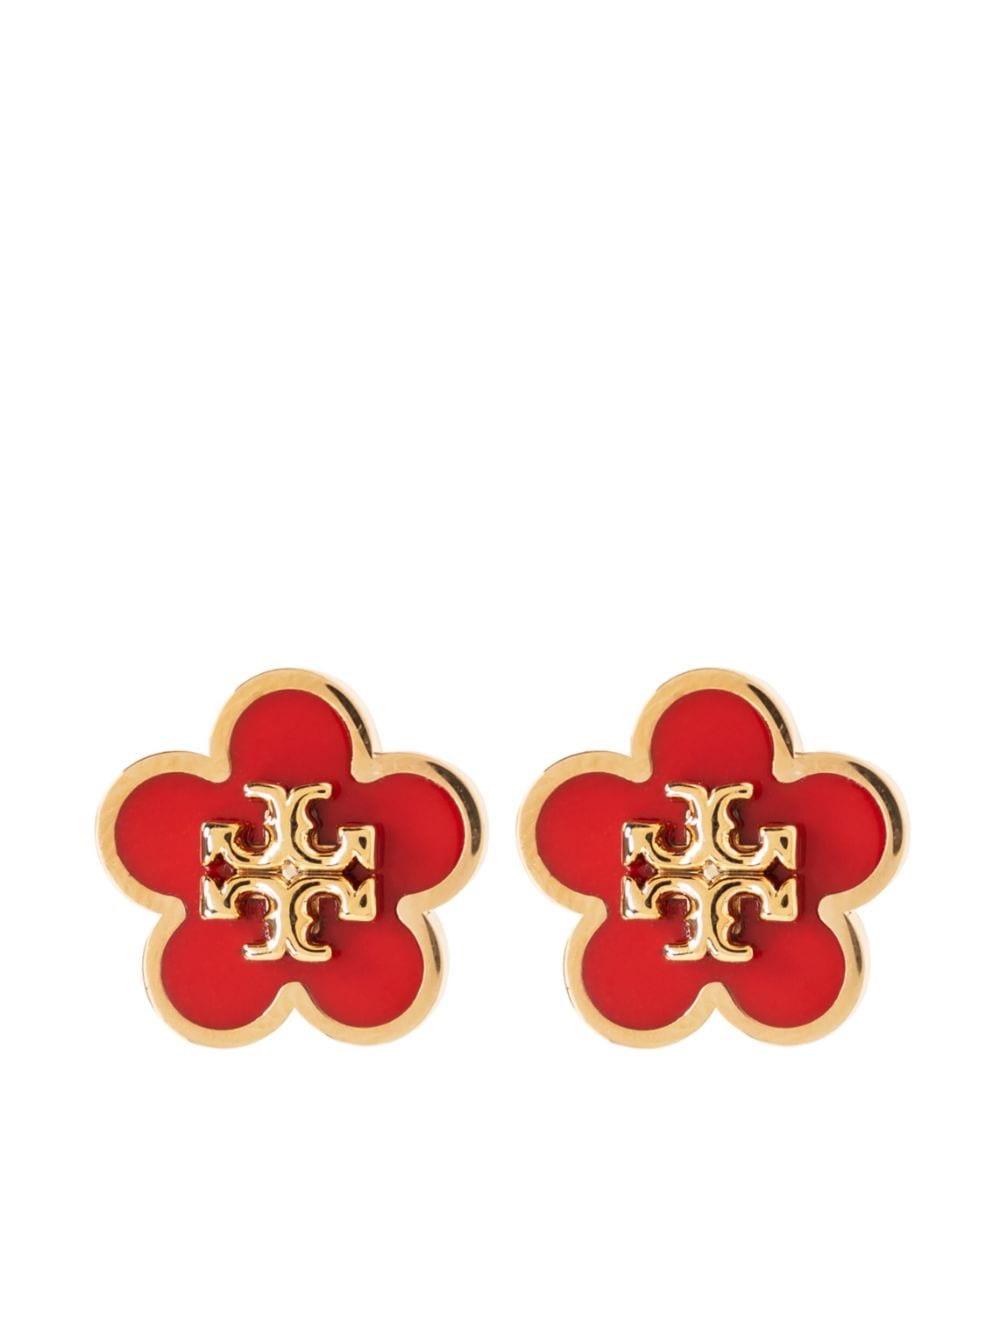 Kira floral stud earrings